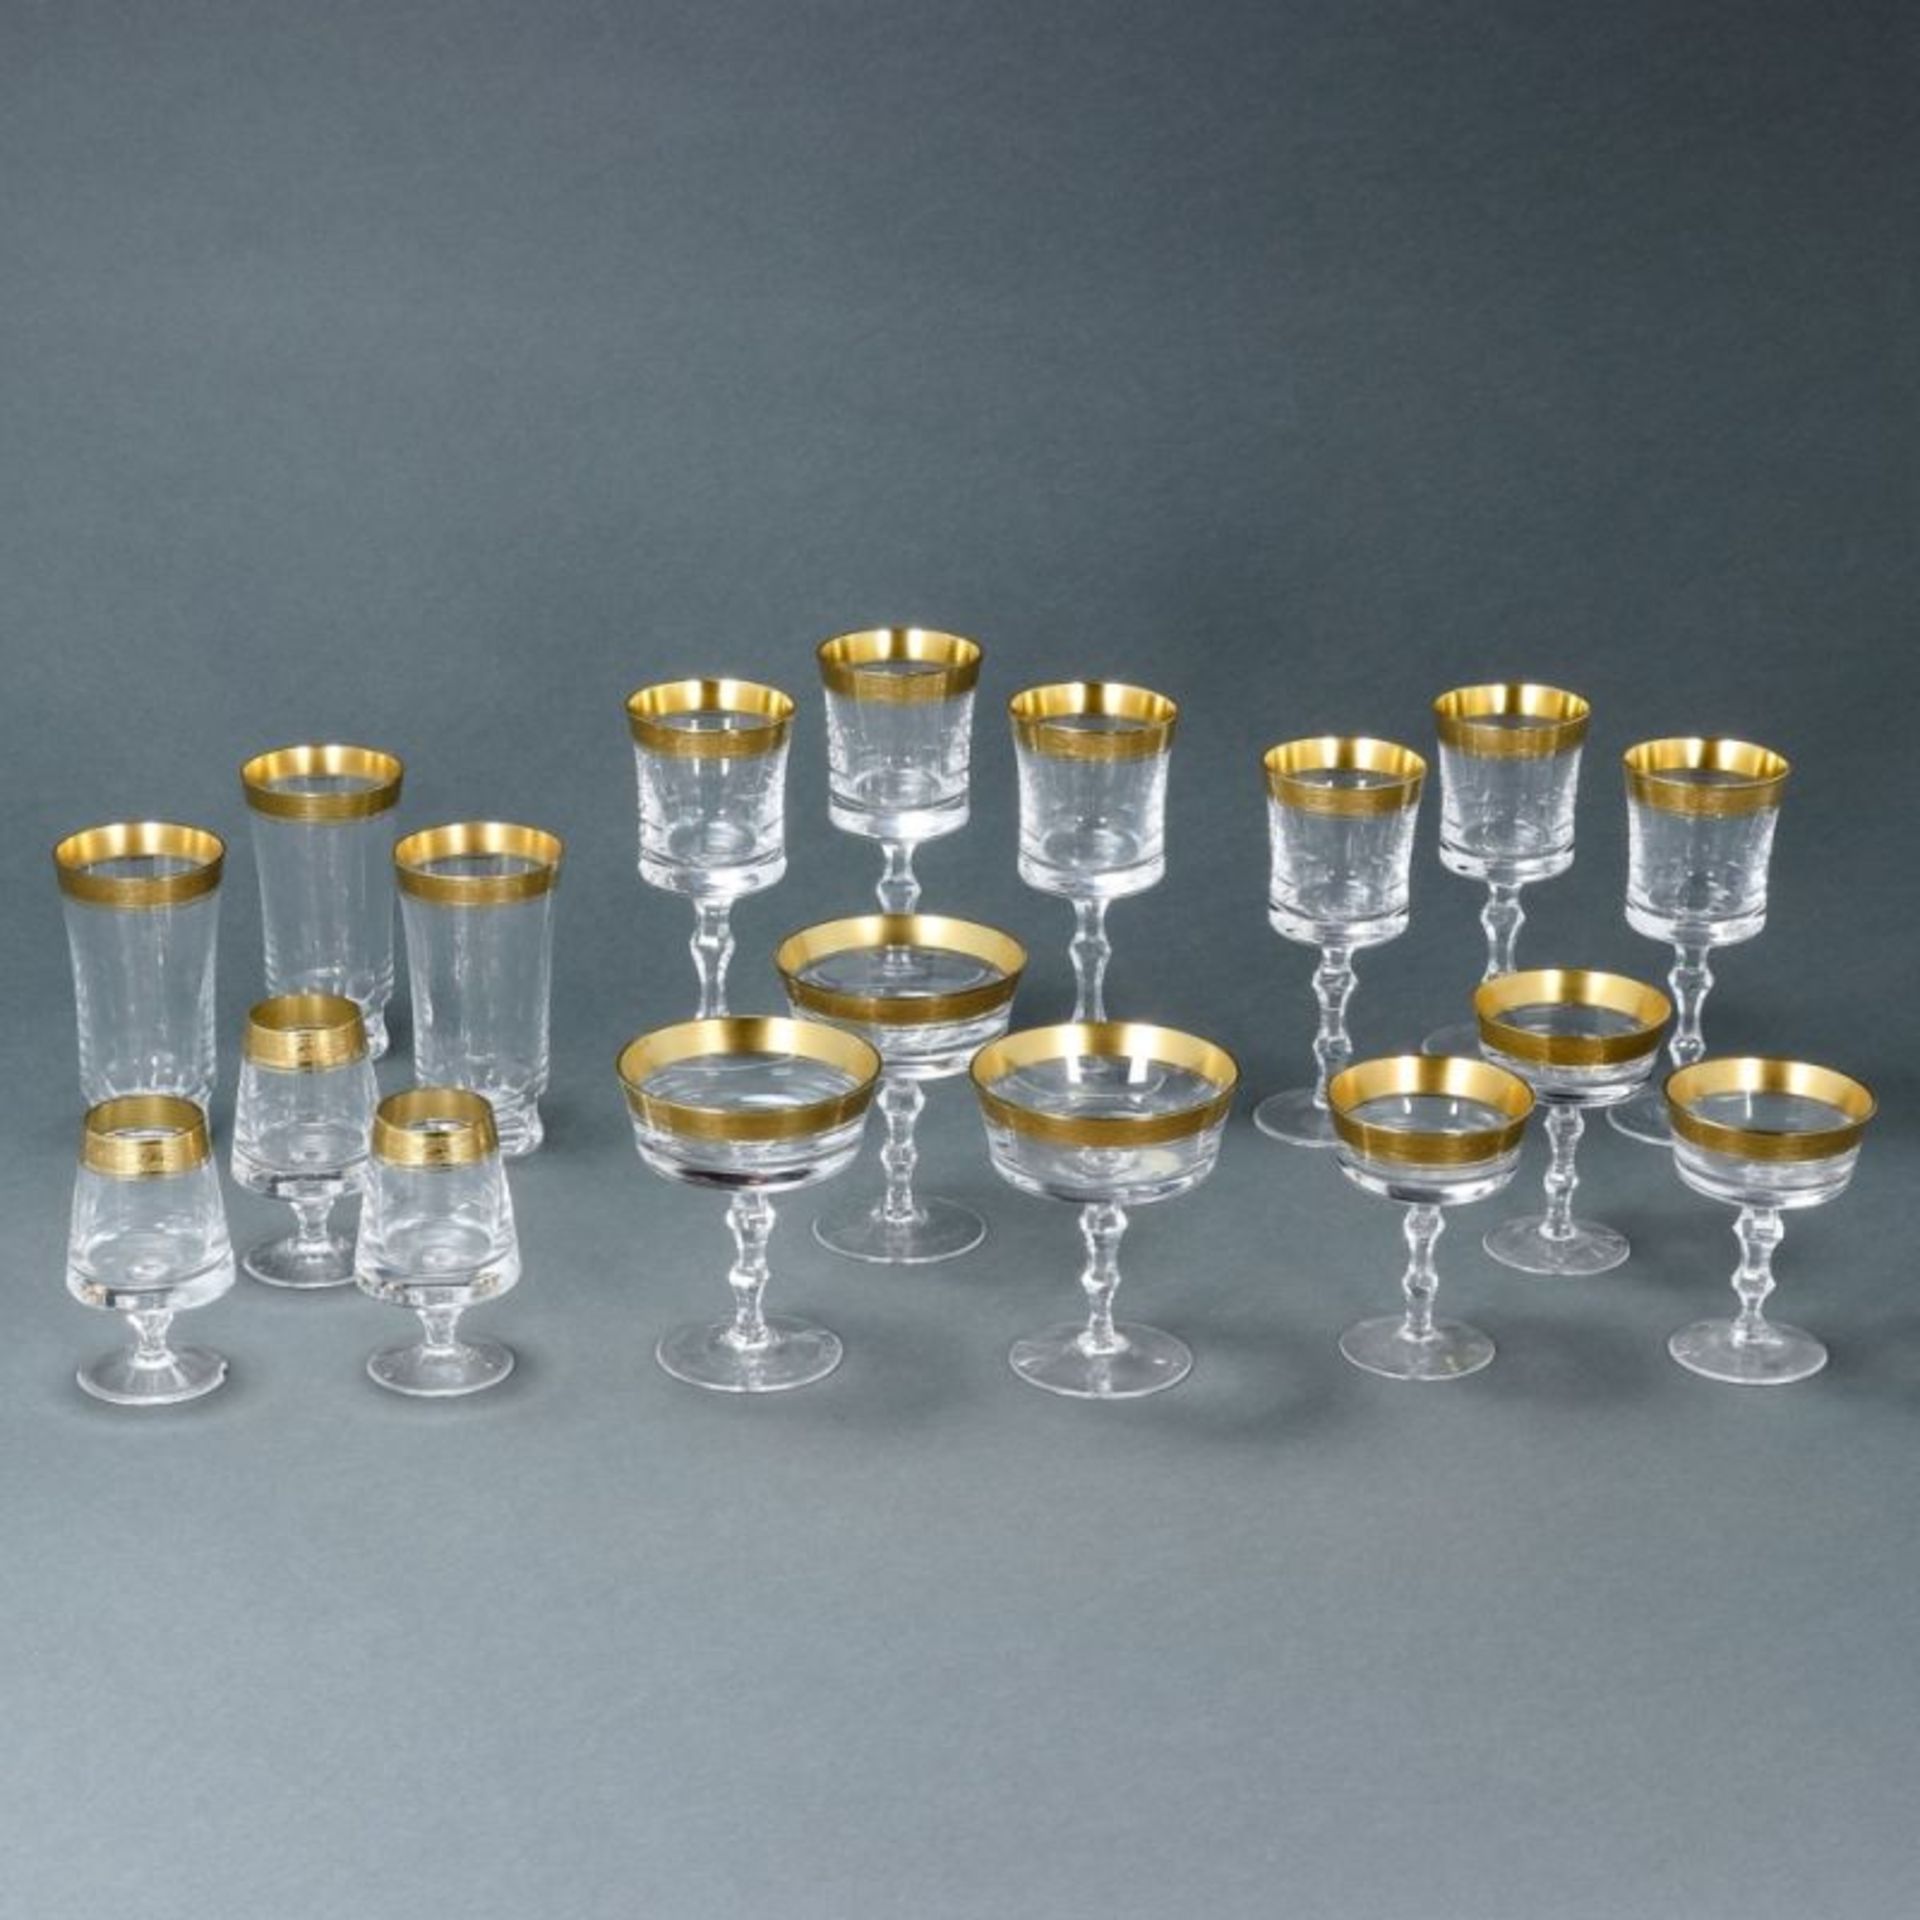 139tlg. Gläserset Steinschönau. Farbloses Glas, breiter Goldrand mit Reliefdekor. 23 Rotwei